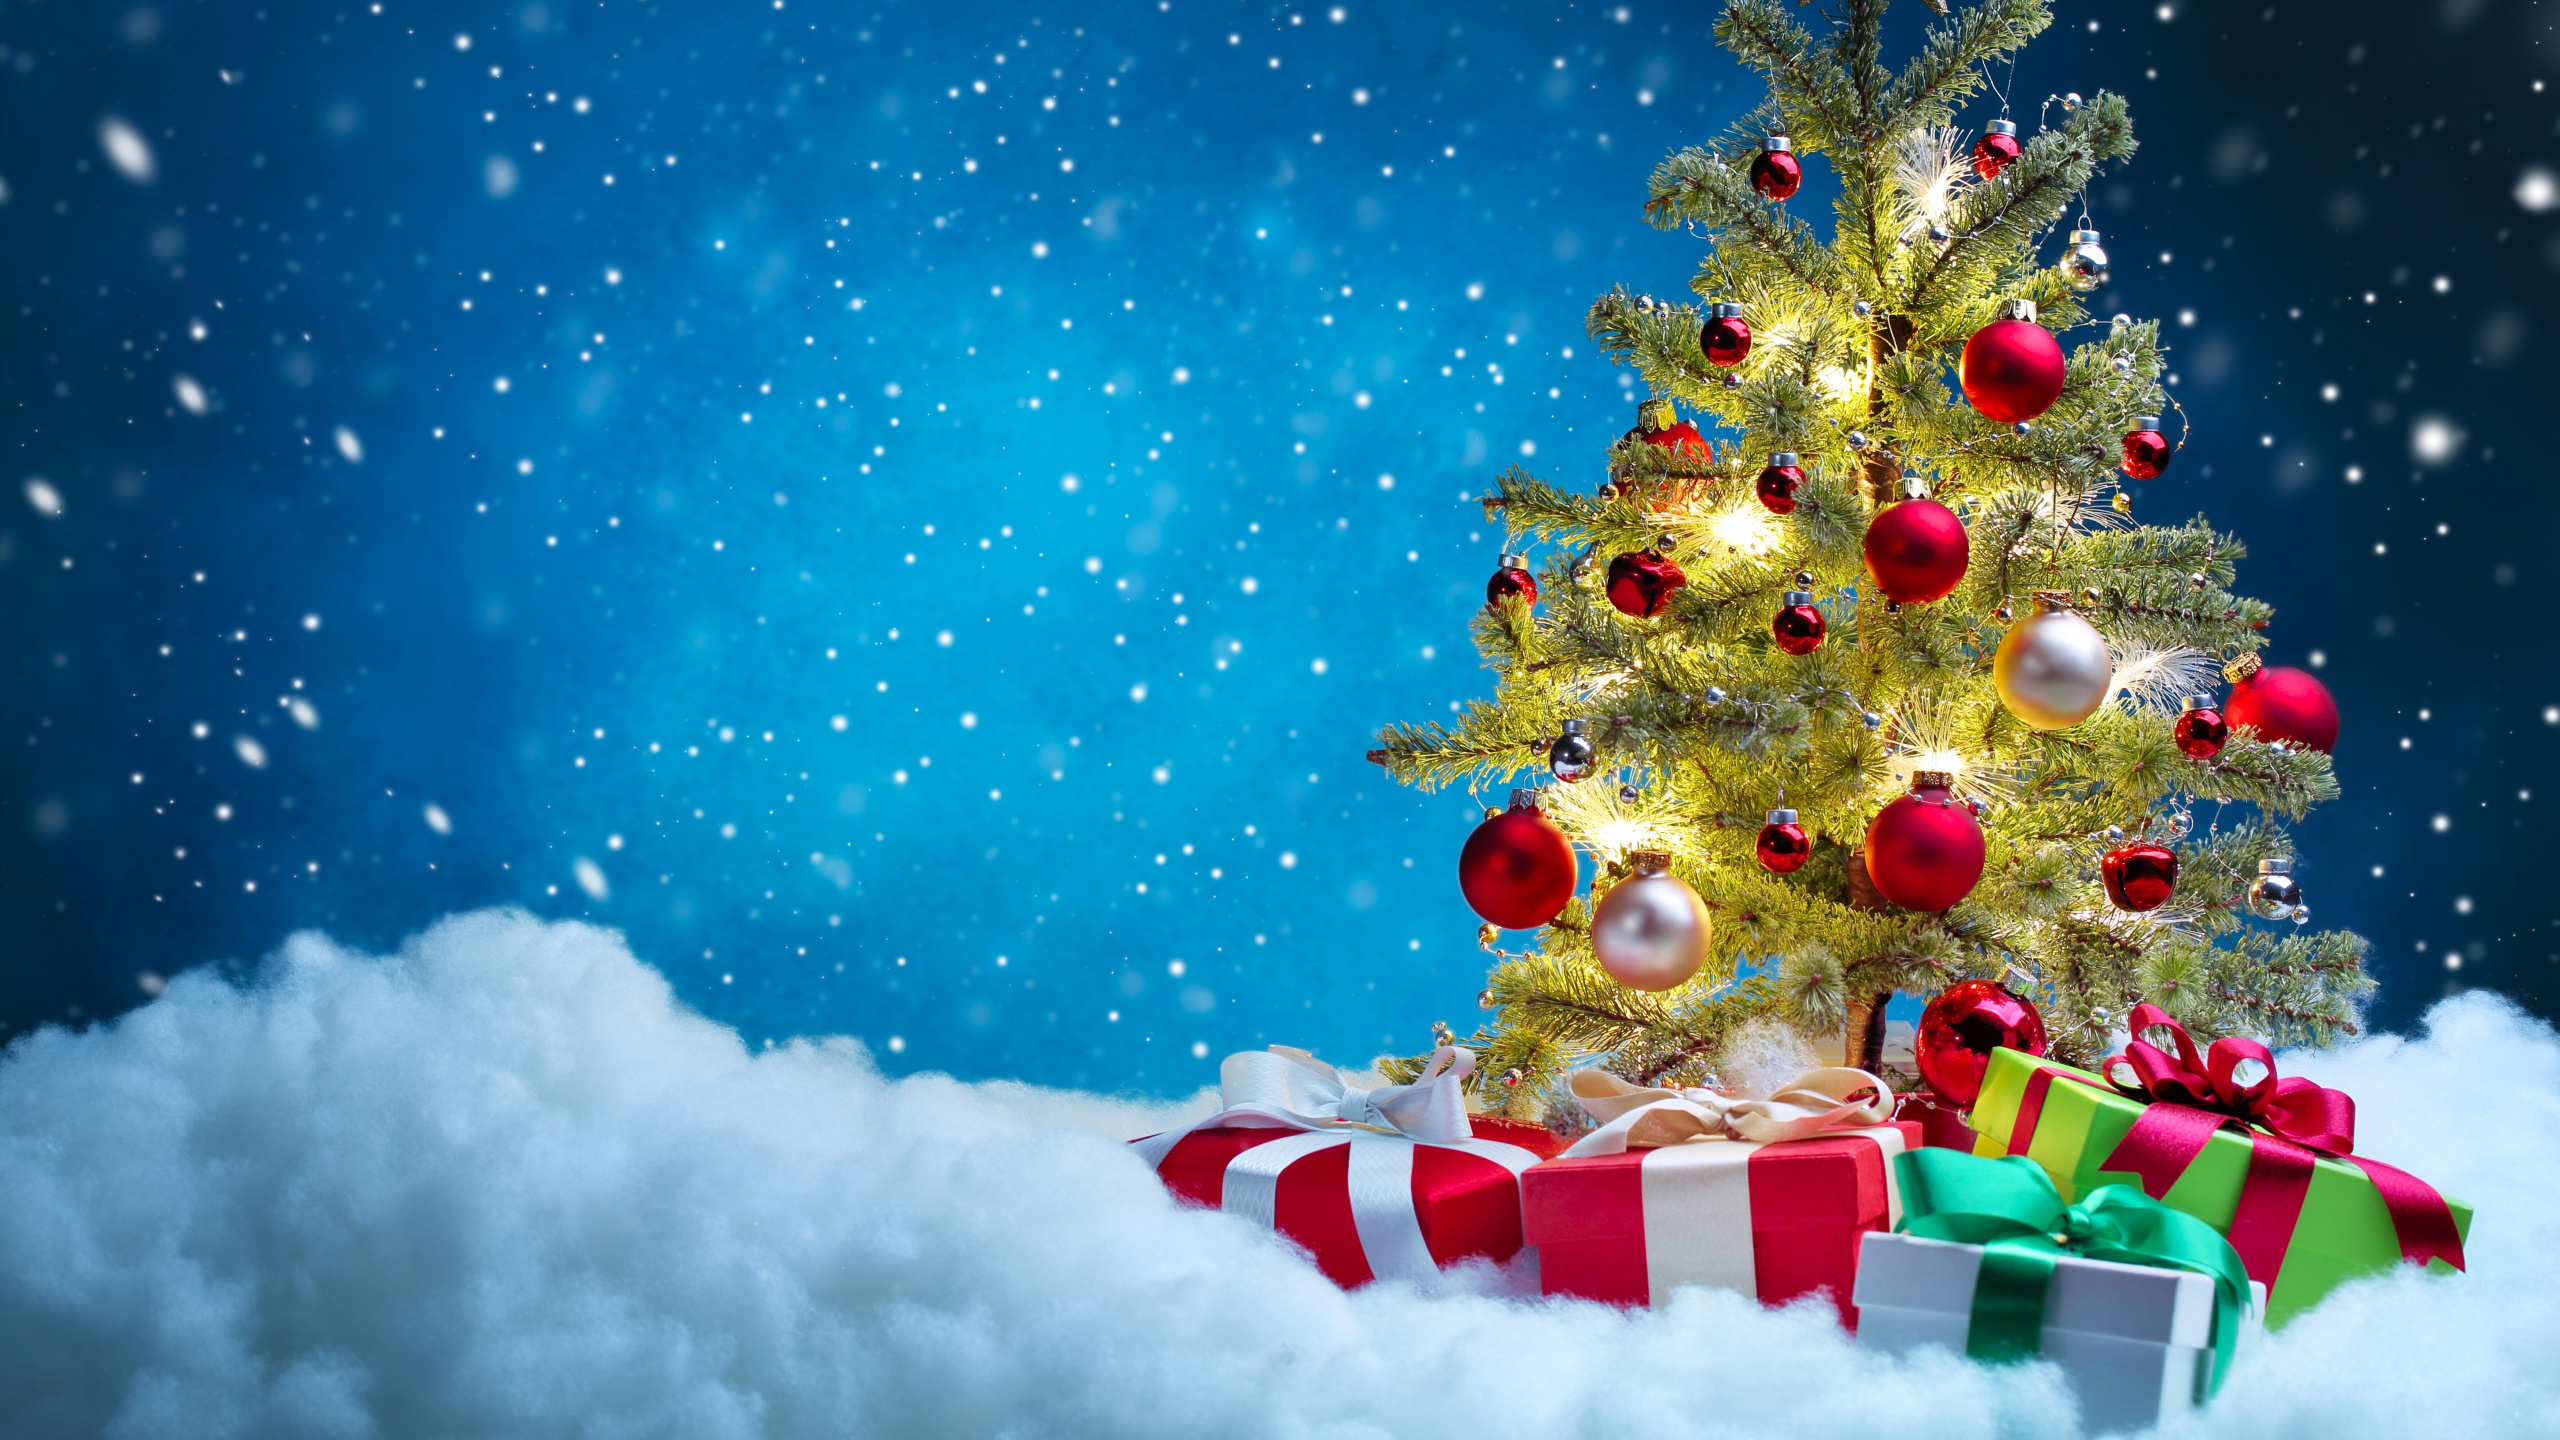 圣诞树, 圣诞节, 圣诞装饰, 圣诞前夕, 圣诞节的装饰品 壁纸 2560x1440 允许